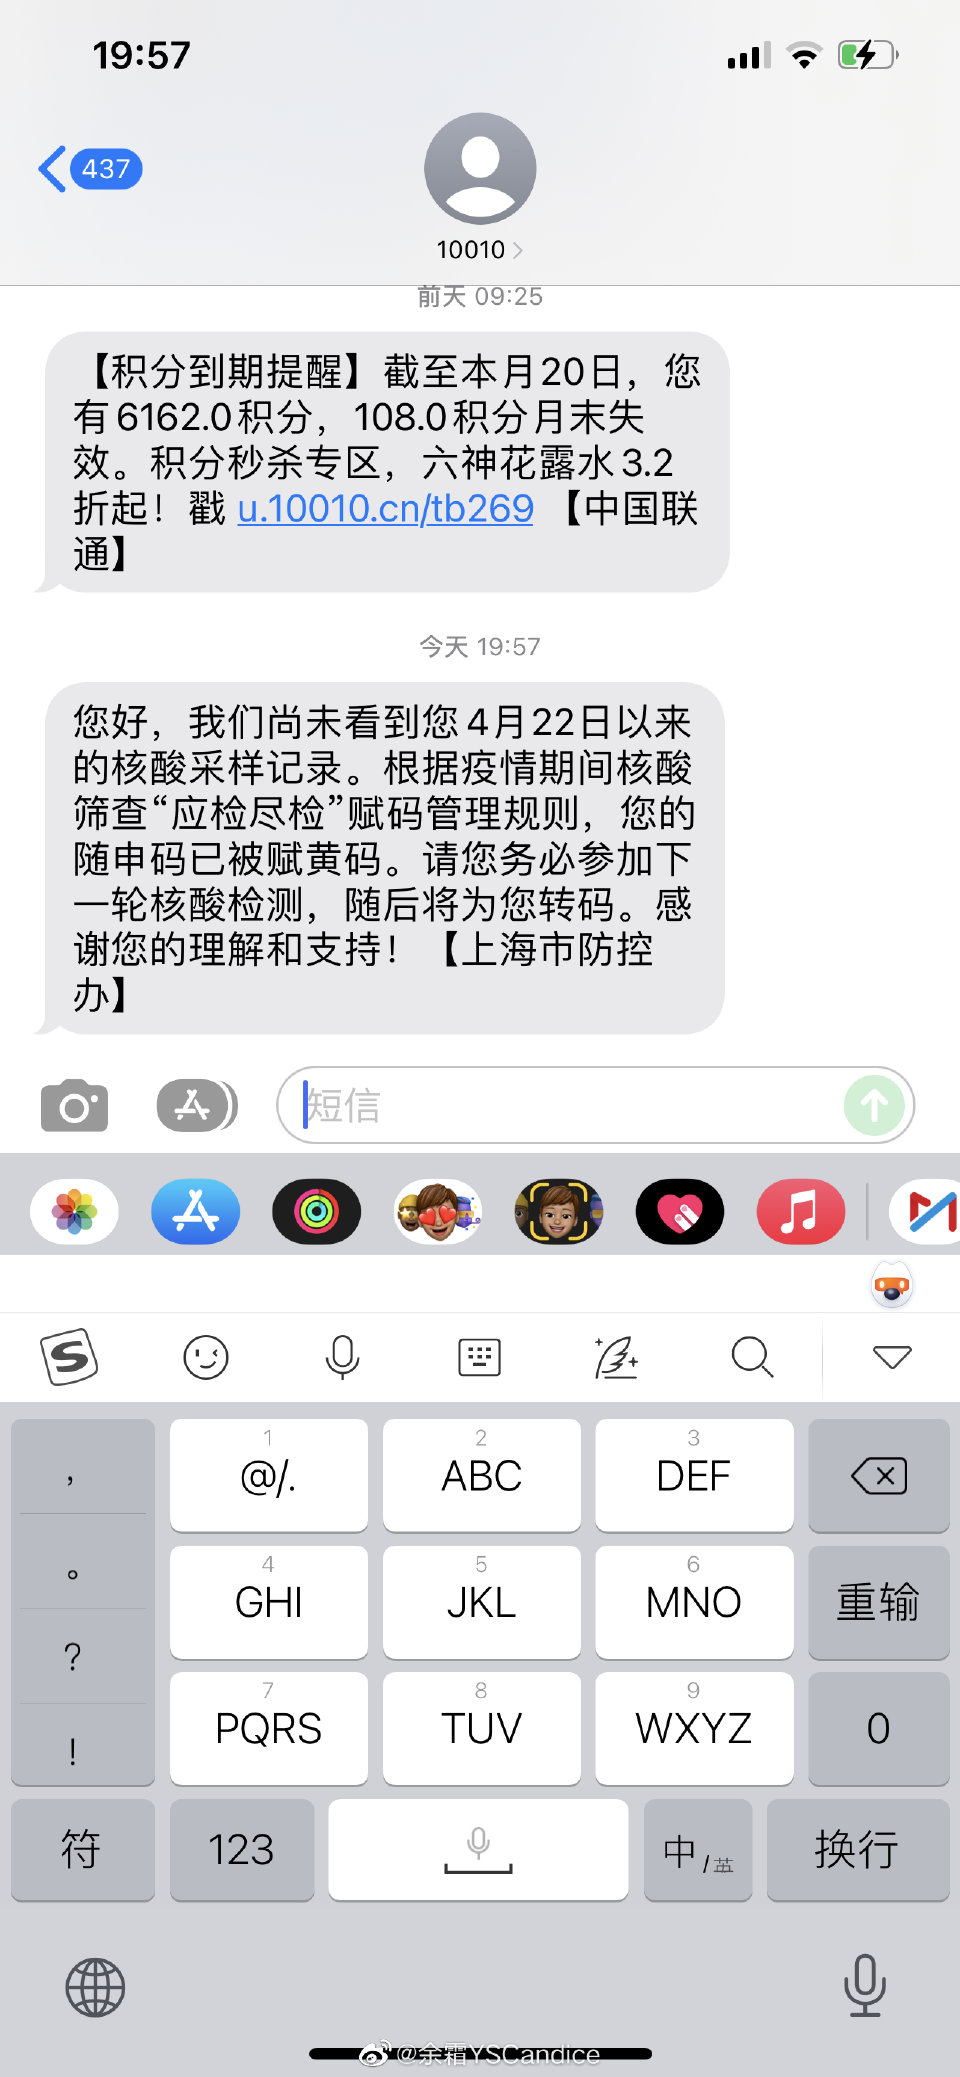 “余霜YSCandice: 上海是人均收到短信吗